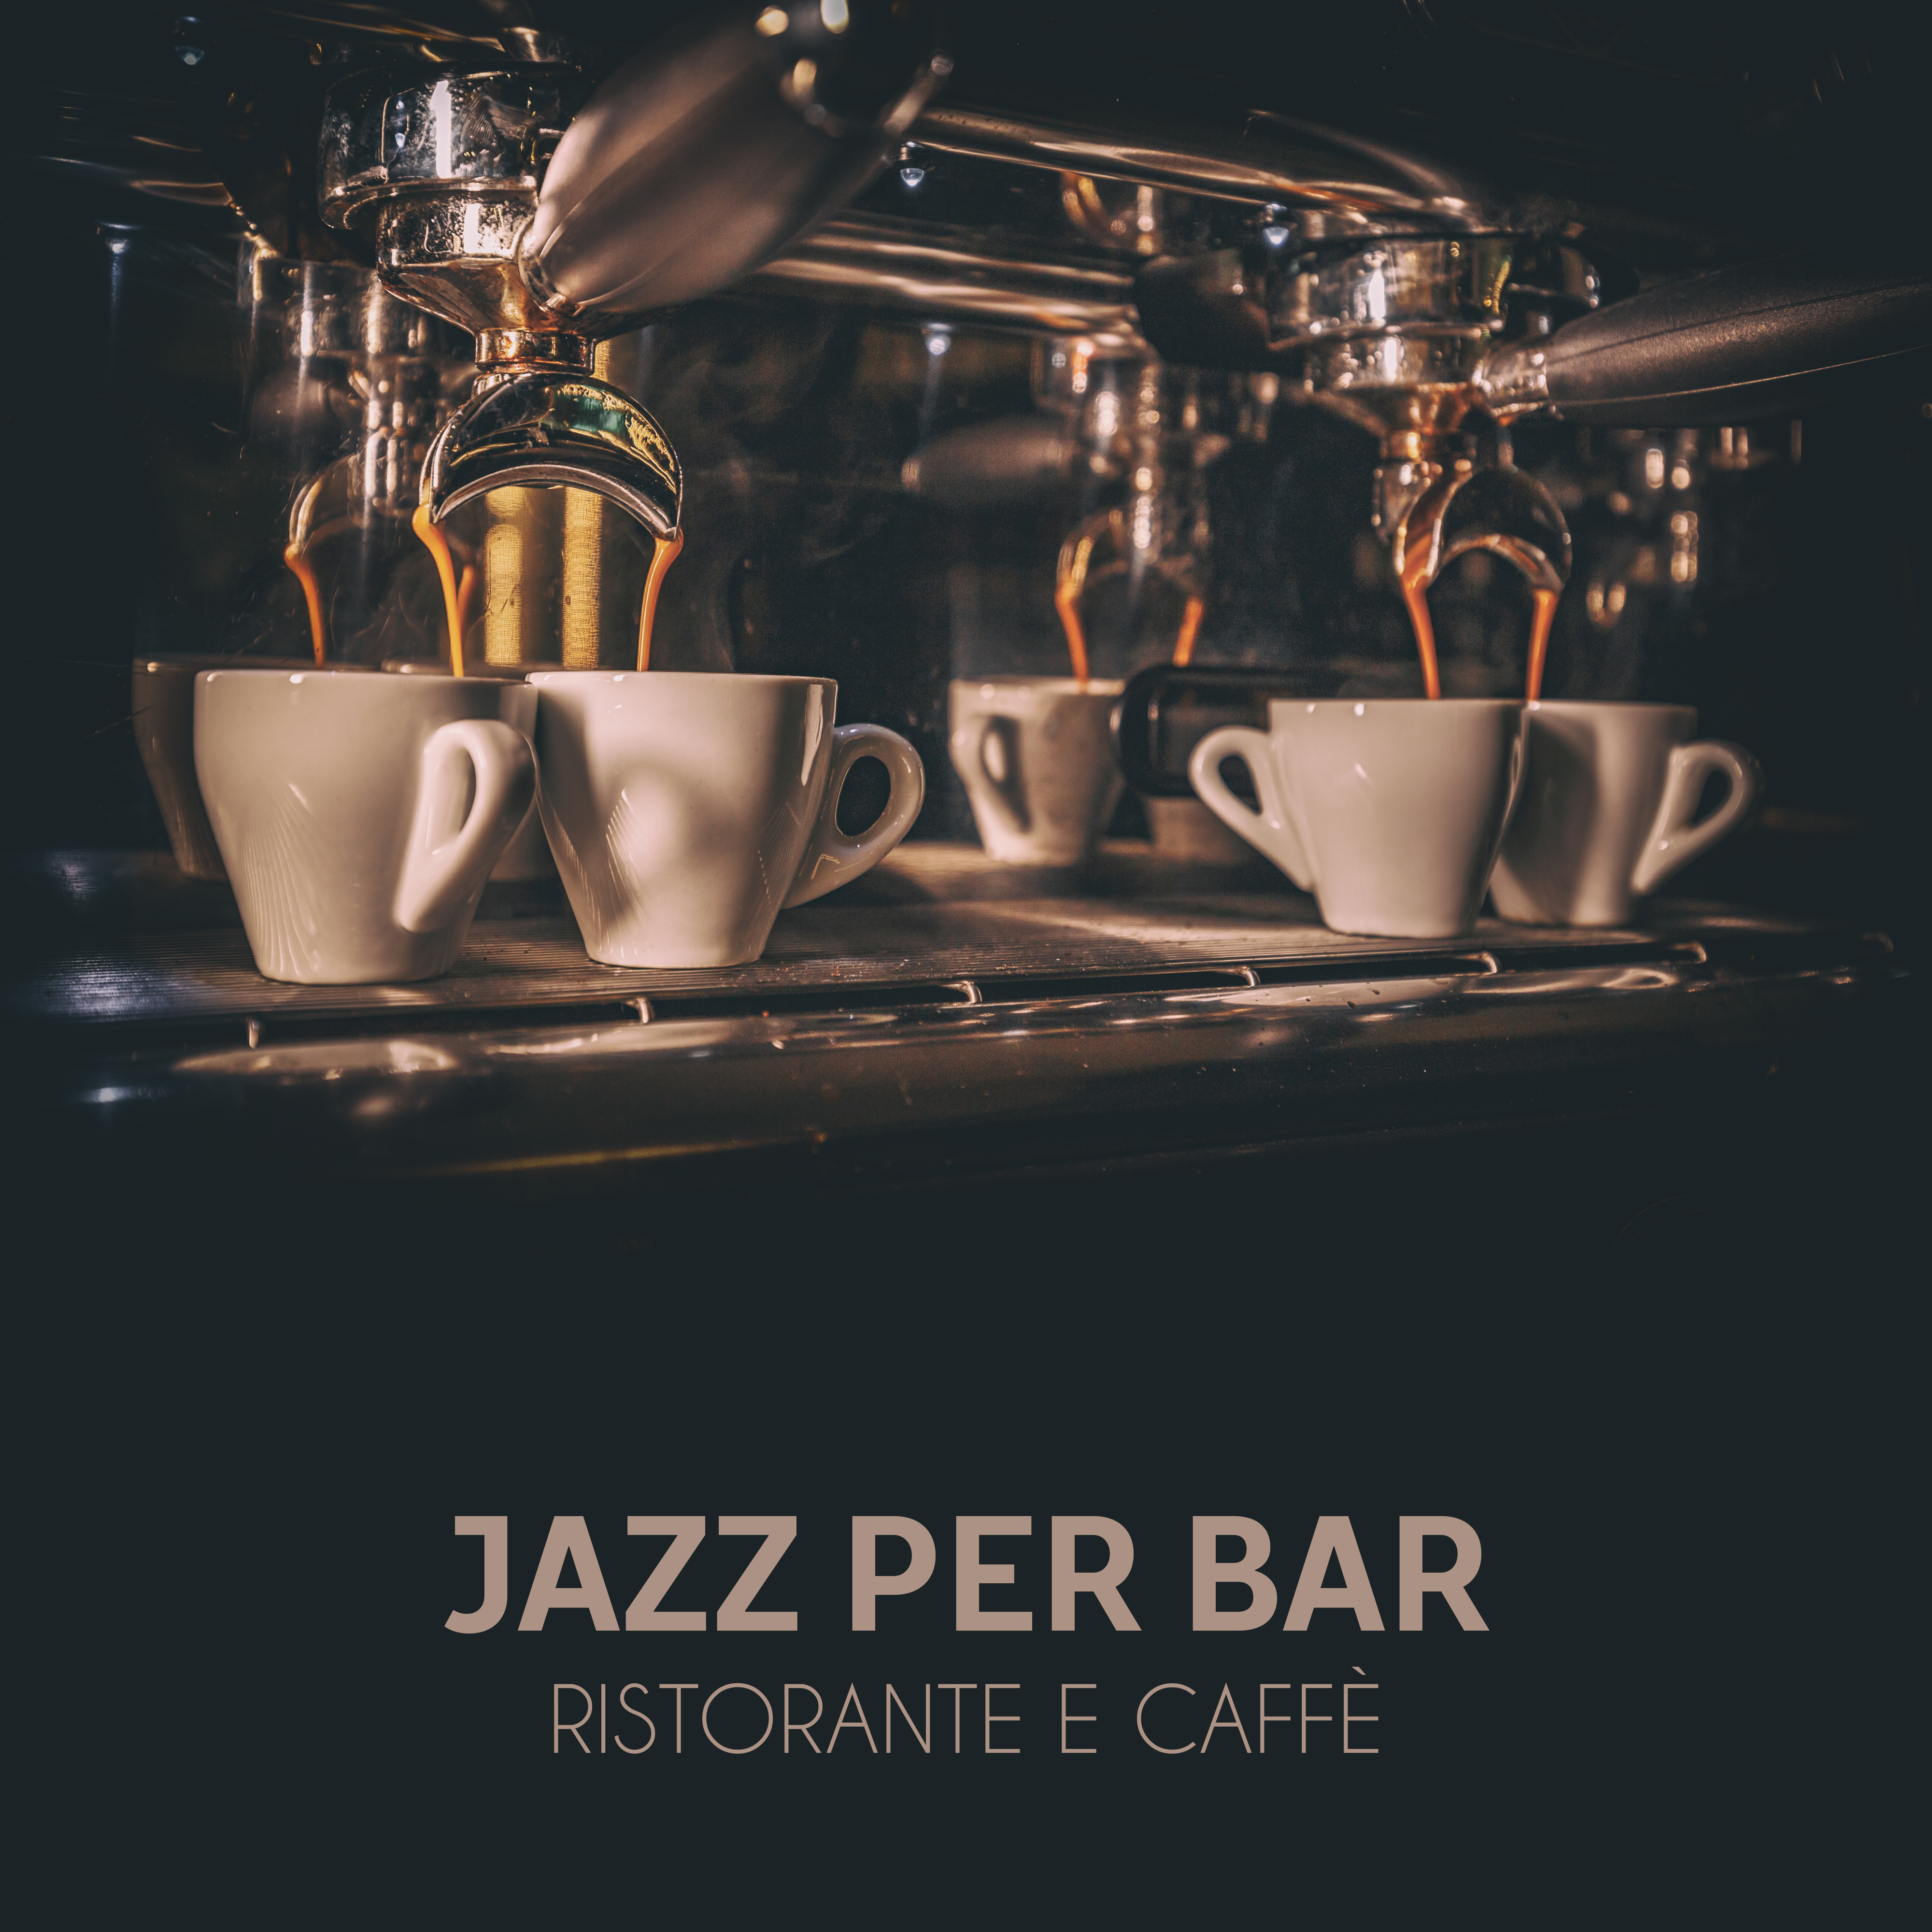 Jazz per bar ristorante e caffe